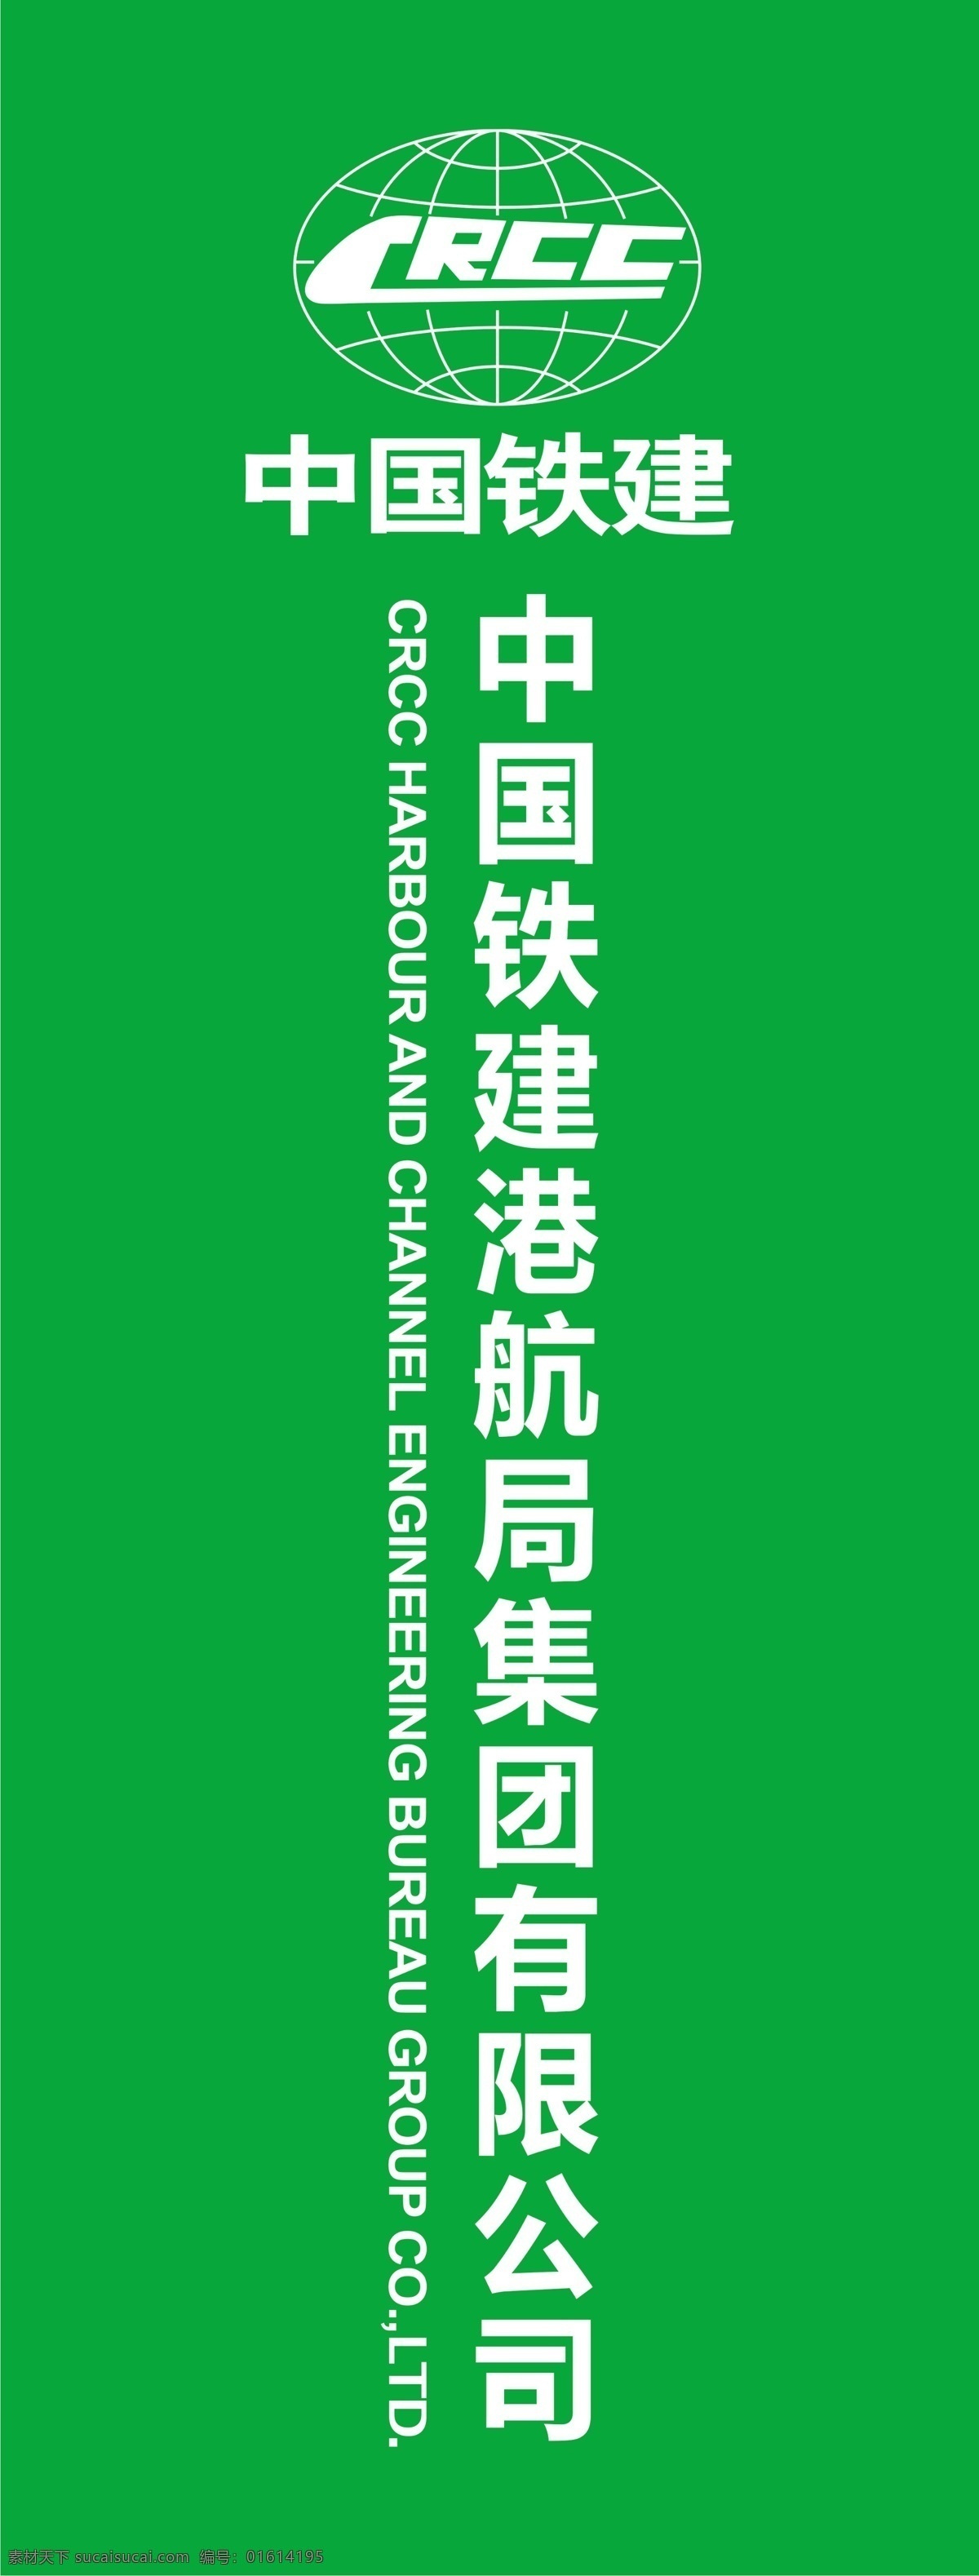 中国铁建 crcc 标志 logo 展架 广告牌 展板模板